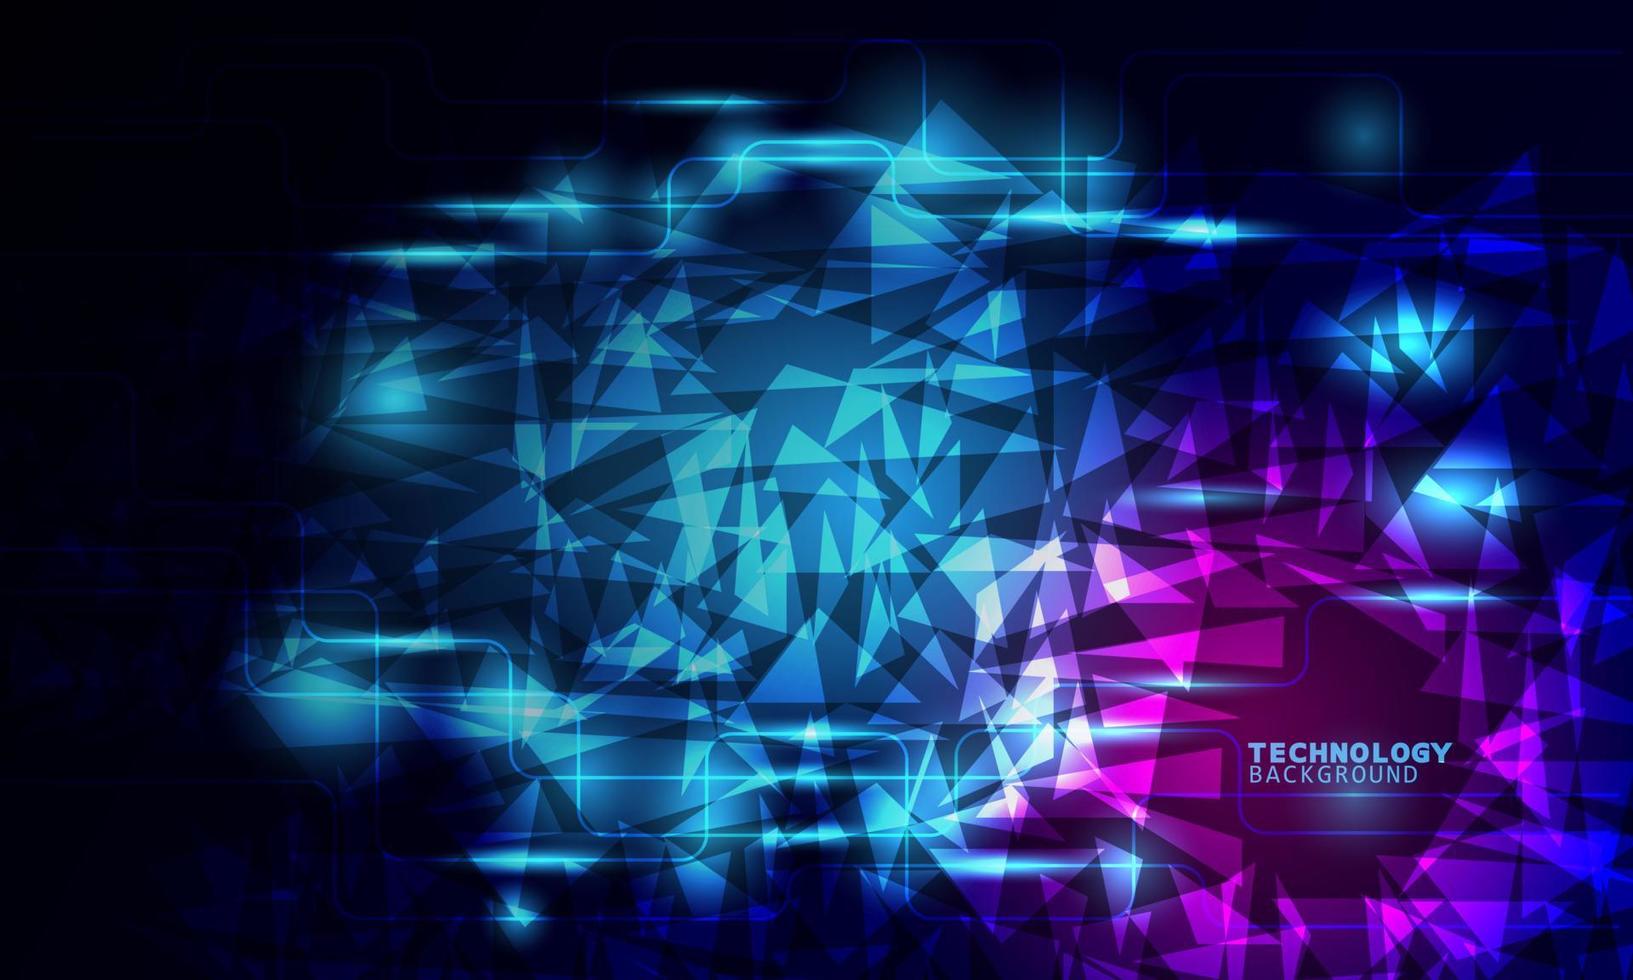 tecnología de ilustración vectorial con triángulos sobre fondo azul oscuro y rosa. vector